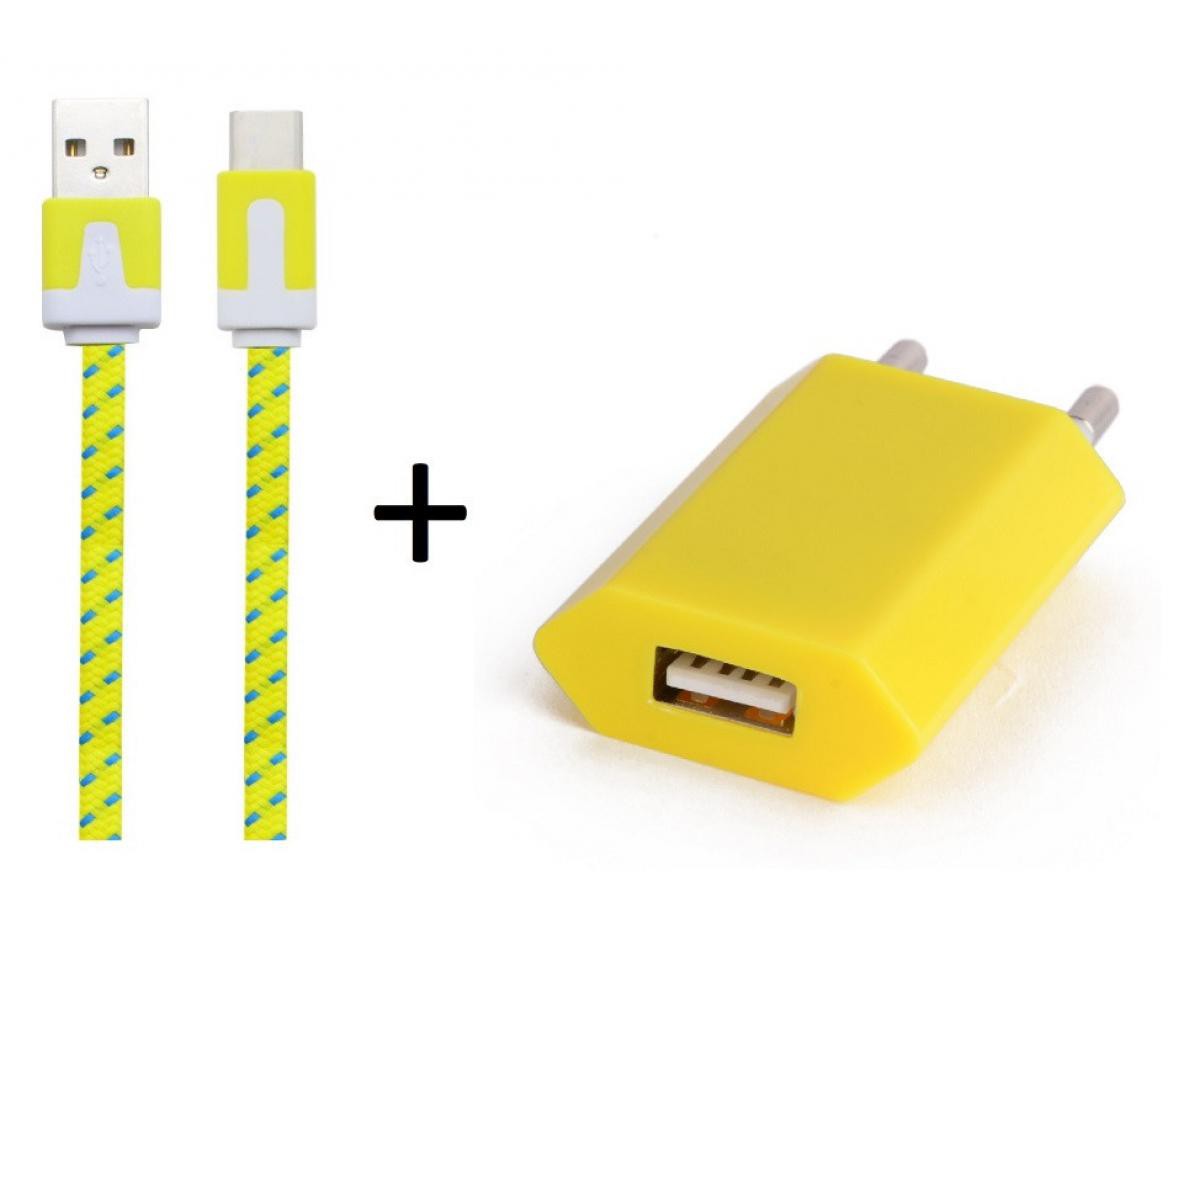 Shot - Pack Chargeur pour OPPO Reno2 Smartphone Type C (Cable Noodle 1m Chargeur + Prise Secteur USB) Murale Android (JAUNE) - Chargeur secteur téléphone